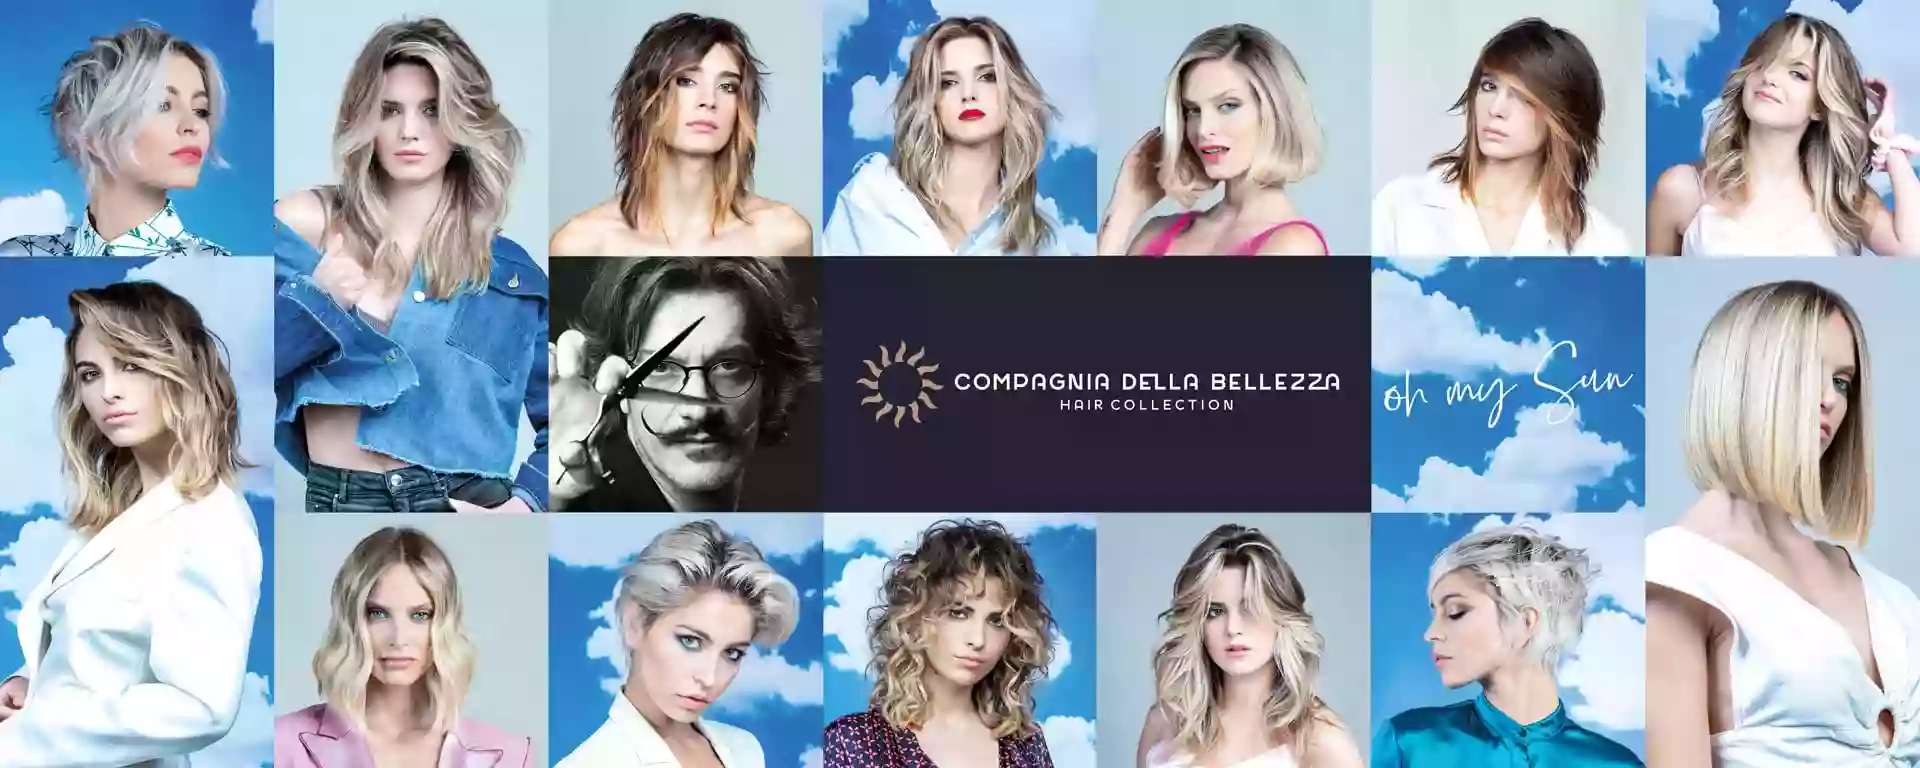 Filippo D’Agostino - Compagnia della Bellezza - Parrucchiere Palermo